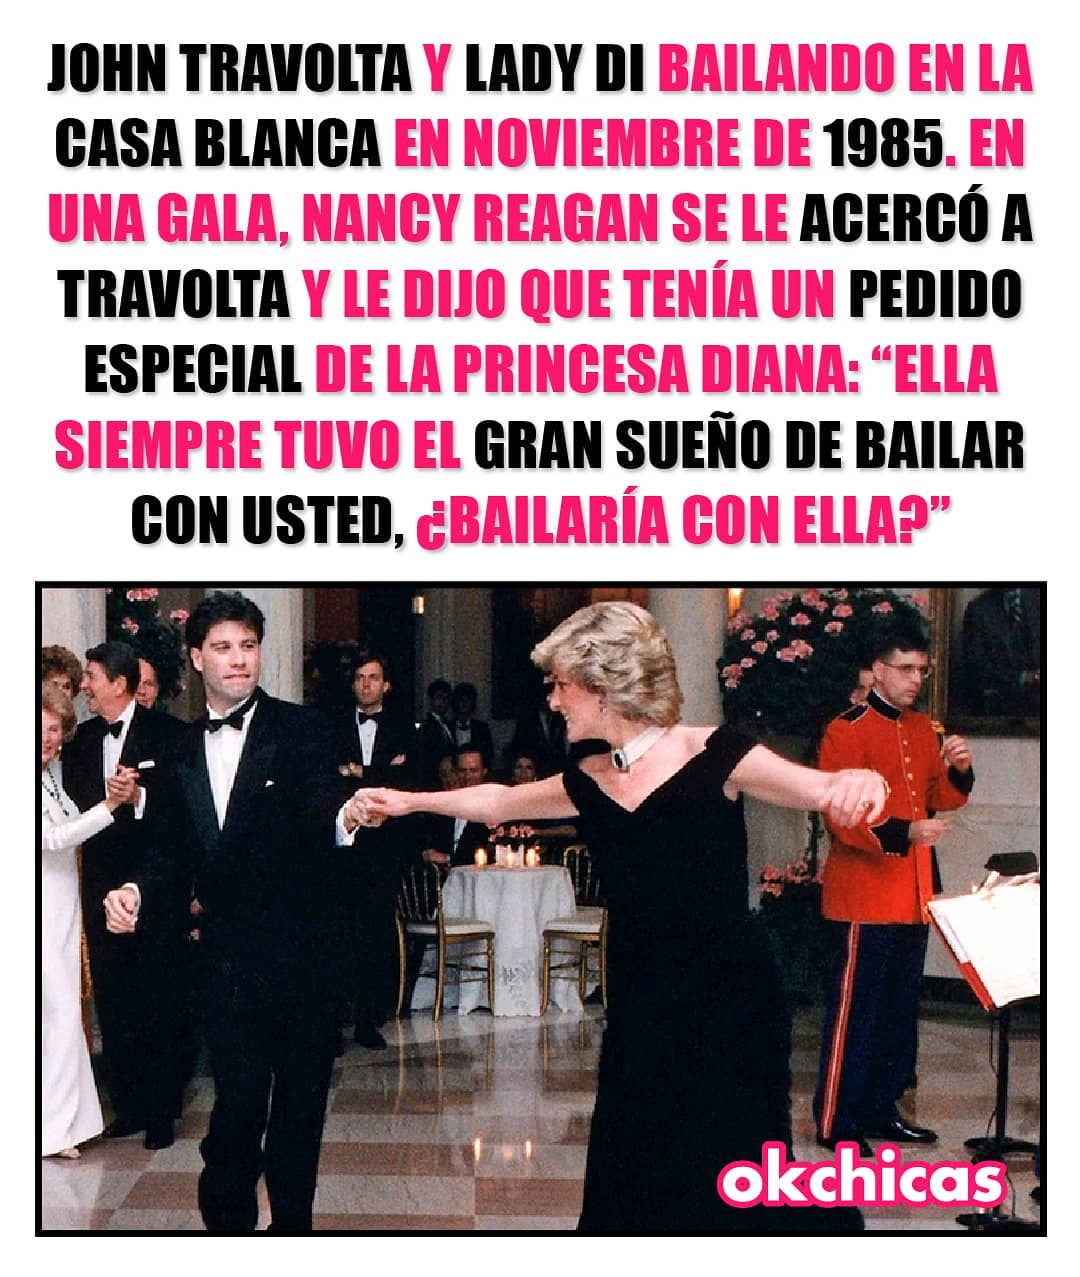 John Travolta y Lady Di bailando en la Casa Blanca en noviembre de 1985. En una gala, Nancy Reagan se le acercó a Travolta y le dijo que tenía un pedido especial de la princesa diana: Ella siempre tuvo el gran sueño de bailar con usted, ¿bailaría con ella?